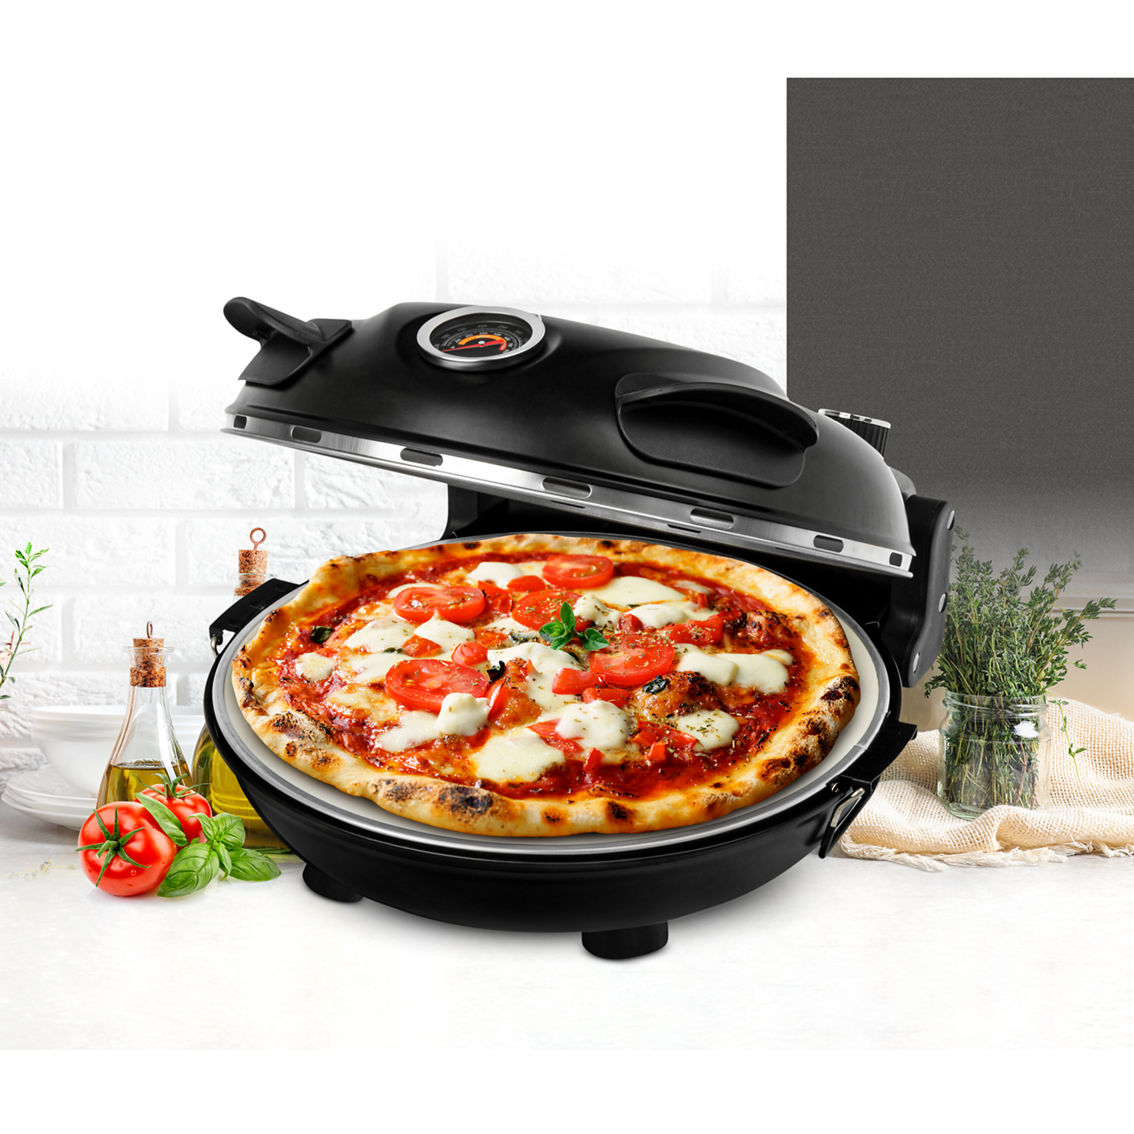 GraniteStone Piezano Countertop Electric Pizza Oven - Image 3 of 8